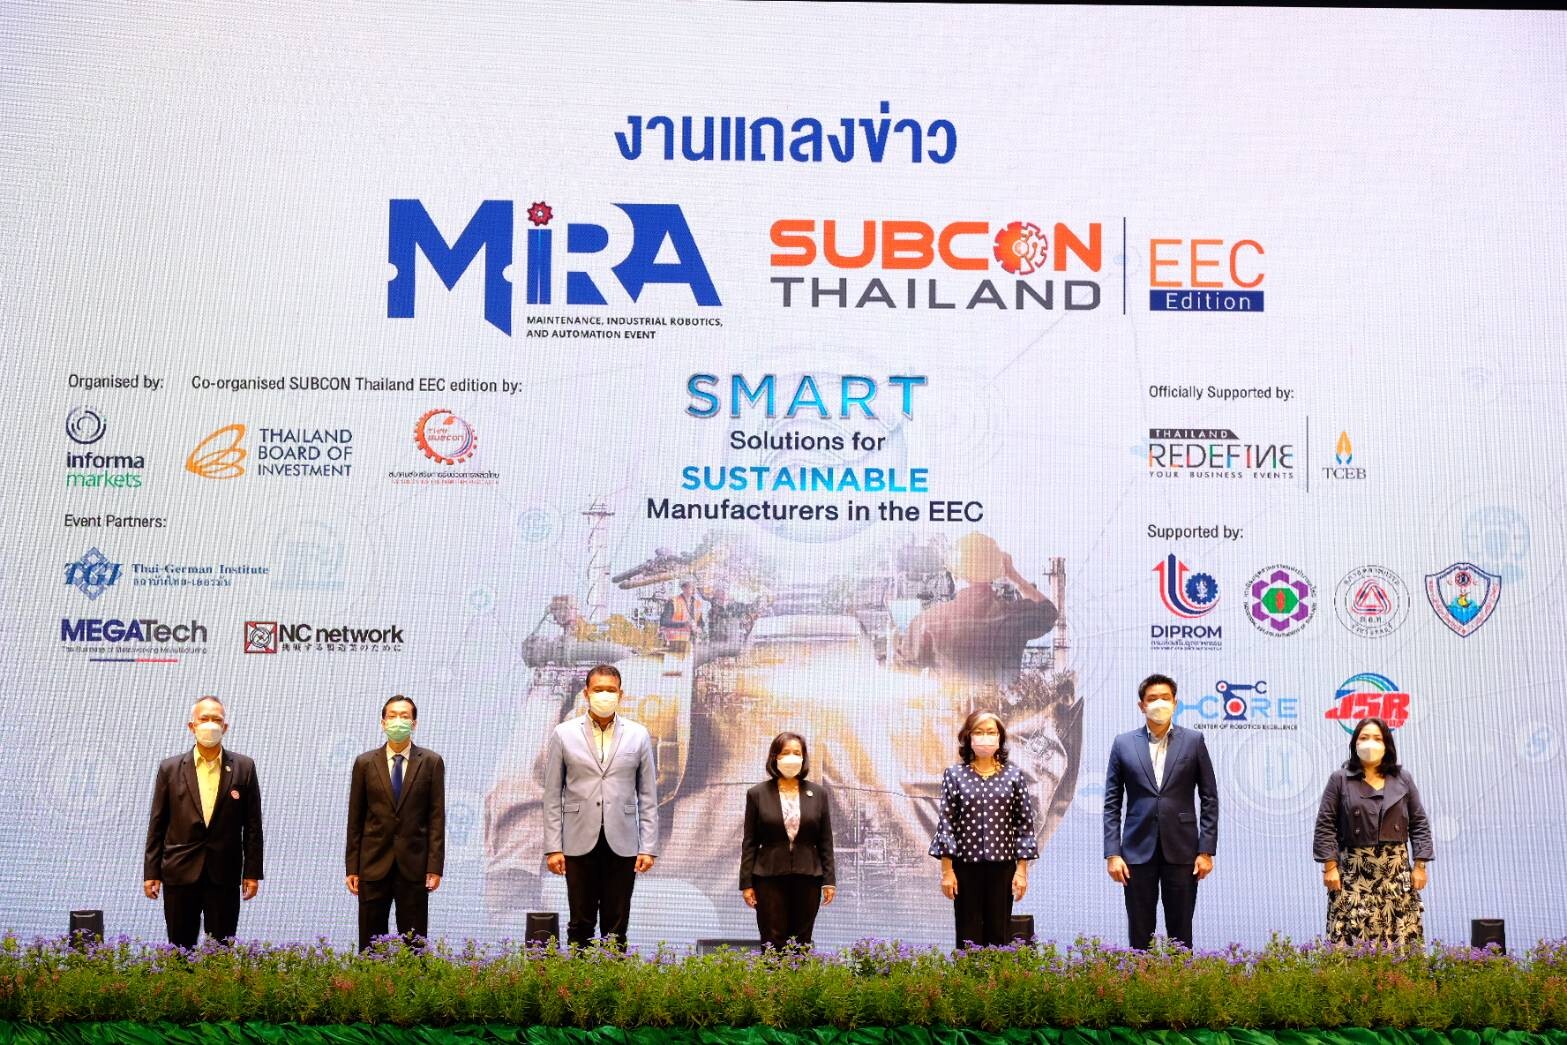 บีโอไอ-อินฟอร์มา-ไทยซับคอน-สถาบันไทย เยอรมัน พร้อมจัดงาน Maintenance, Industrial Robotics, and Automation (MIRA) และ Subcon Thailand EEC อย่างยิ่งใหญ่